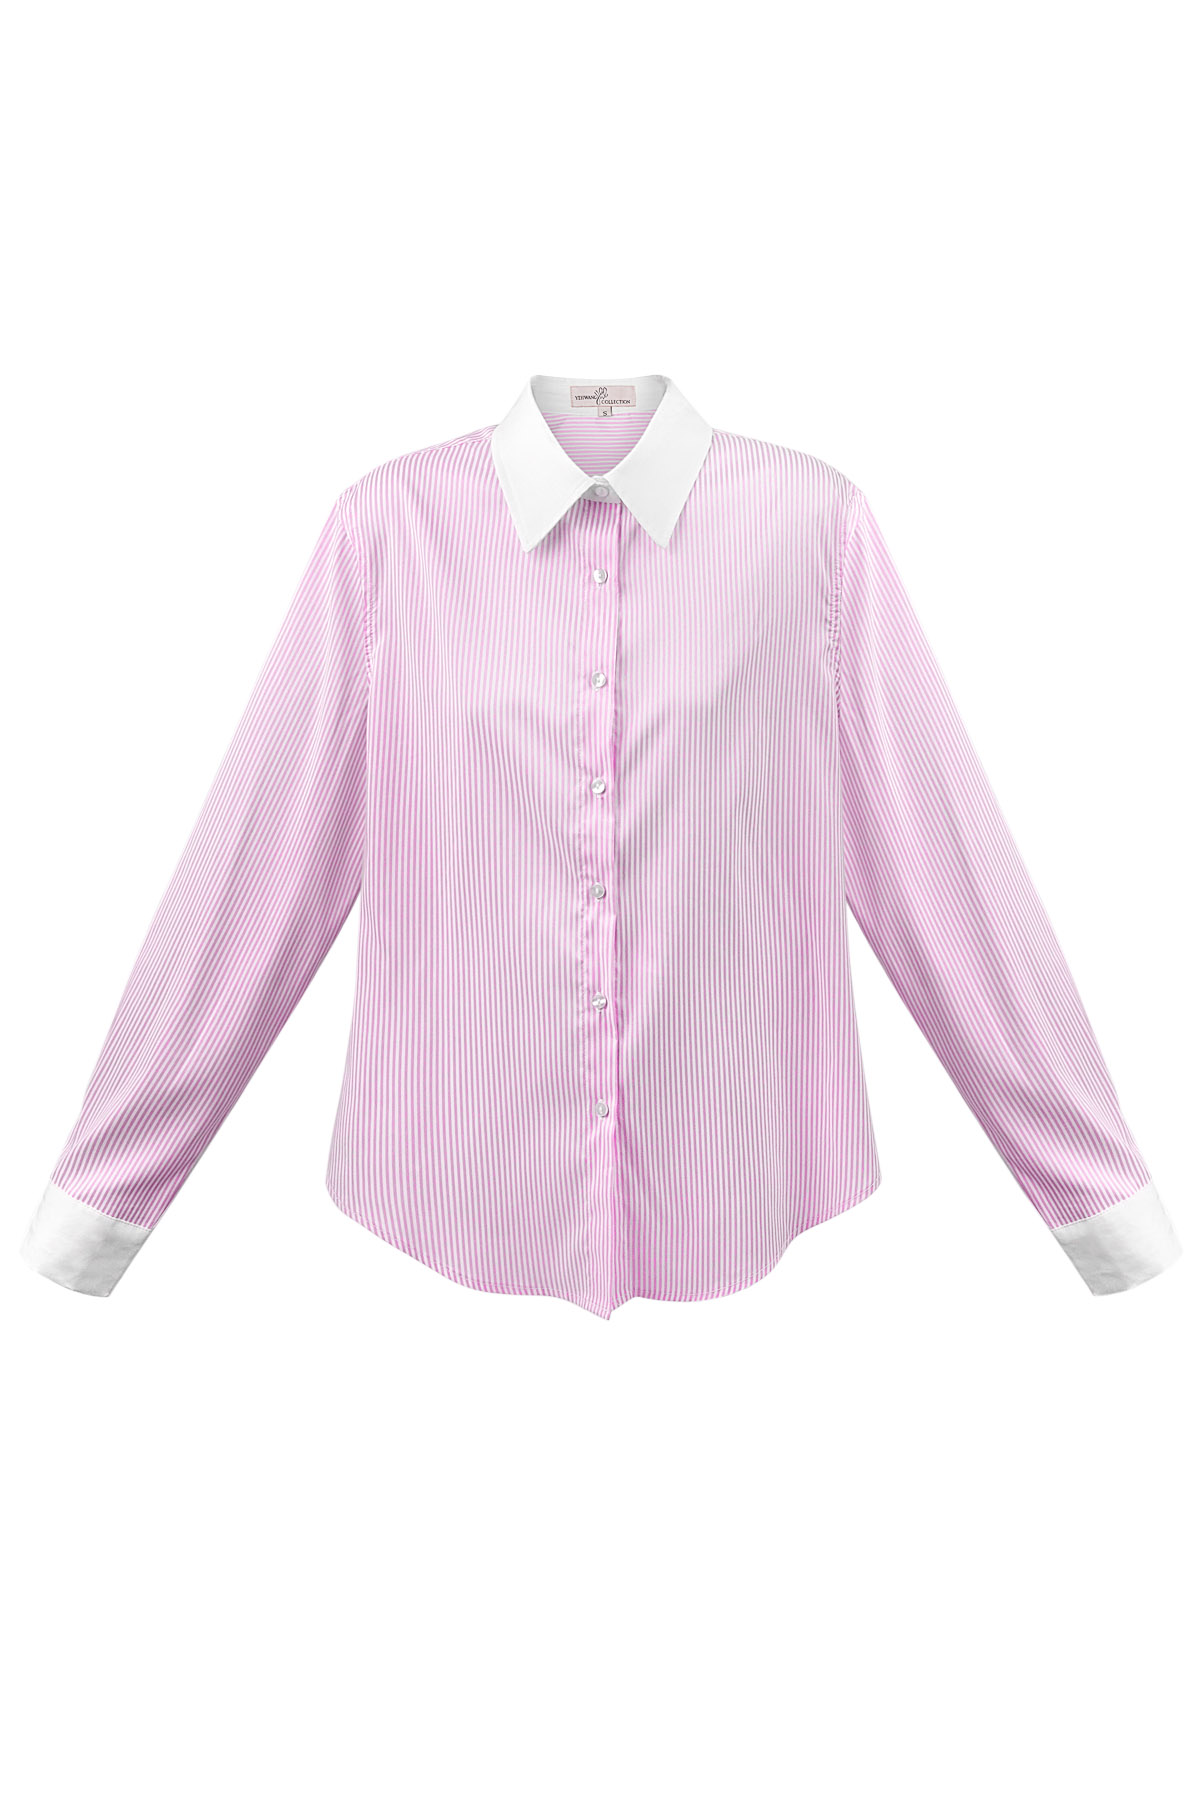 Temel bluz şeritleri - beyaz/pembe h5 